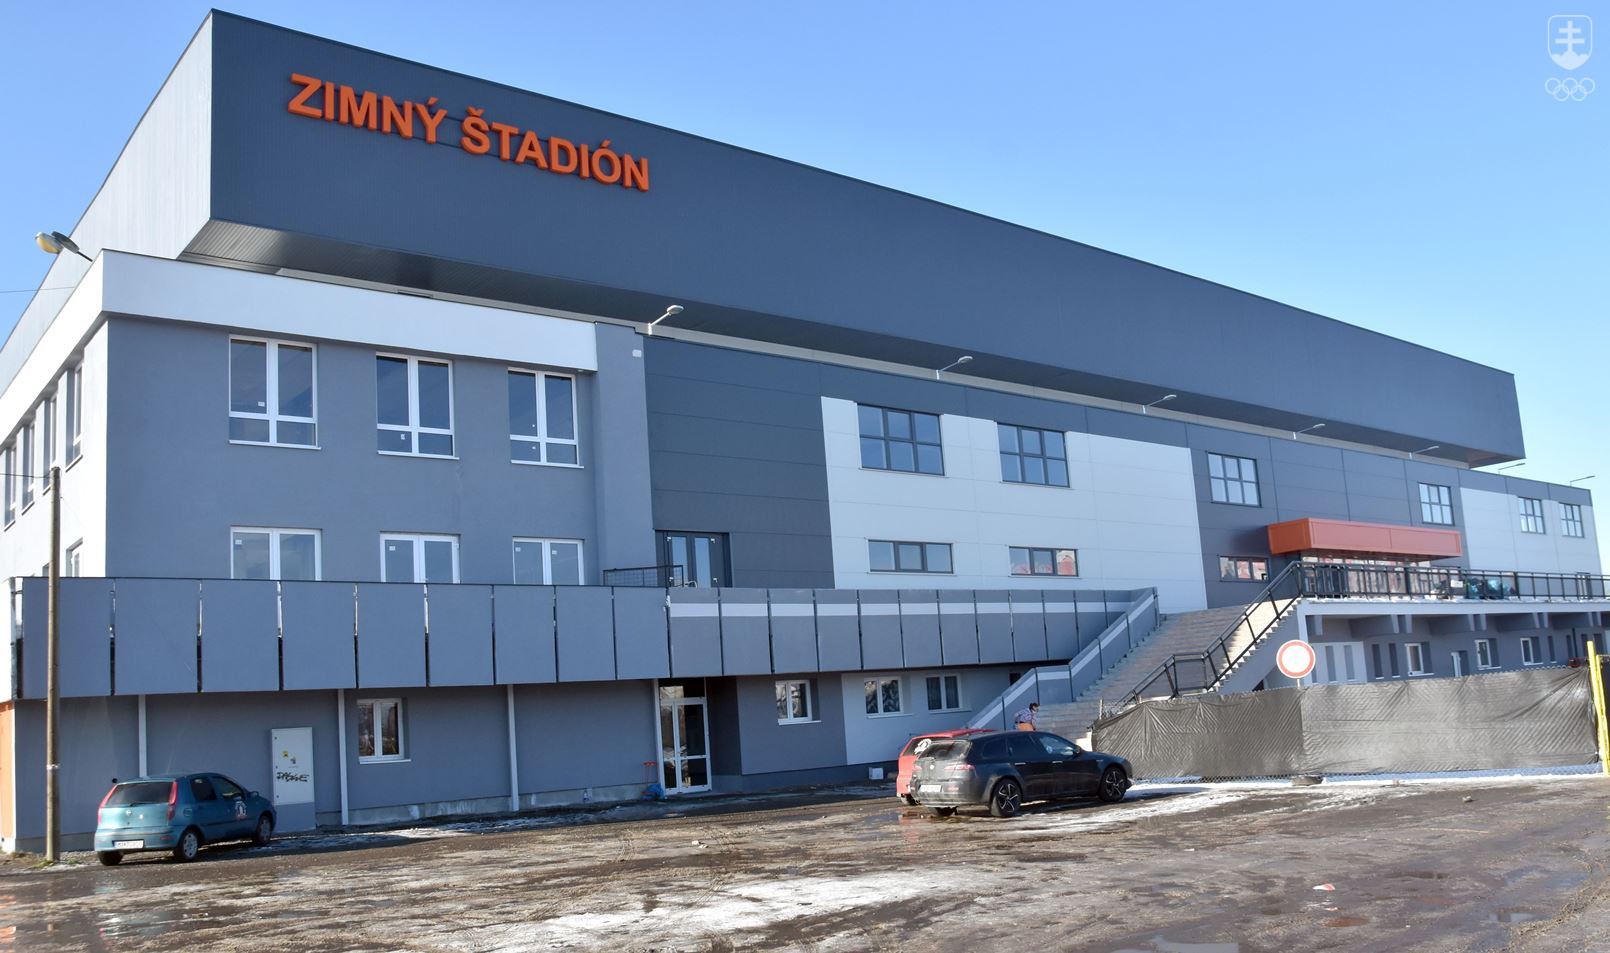 Zimný štadión v Michalovciach patrí medzi športoviská, ktoré sa nedávno podarilo rekonštruovať. V súčasnej podobe je od januára 2018. Teraz sa by sa mali vynoviť viaceré ďalšie športoviská, aj postaviť nové.